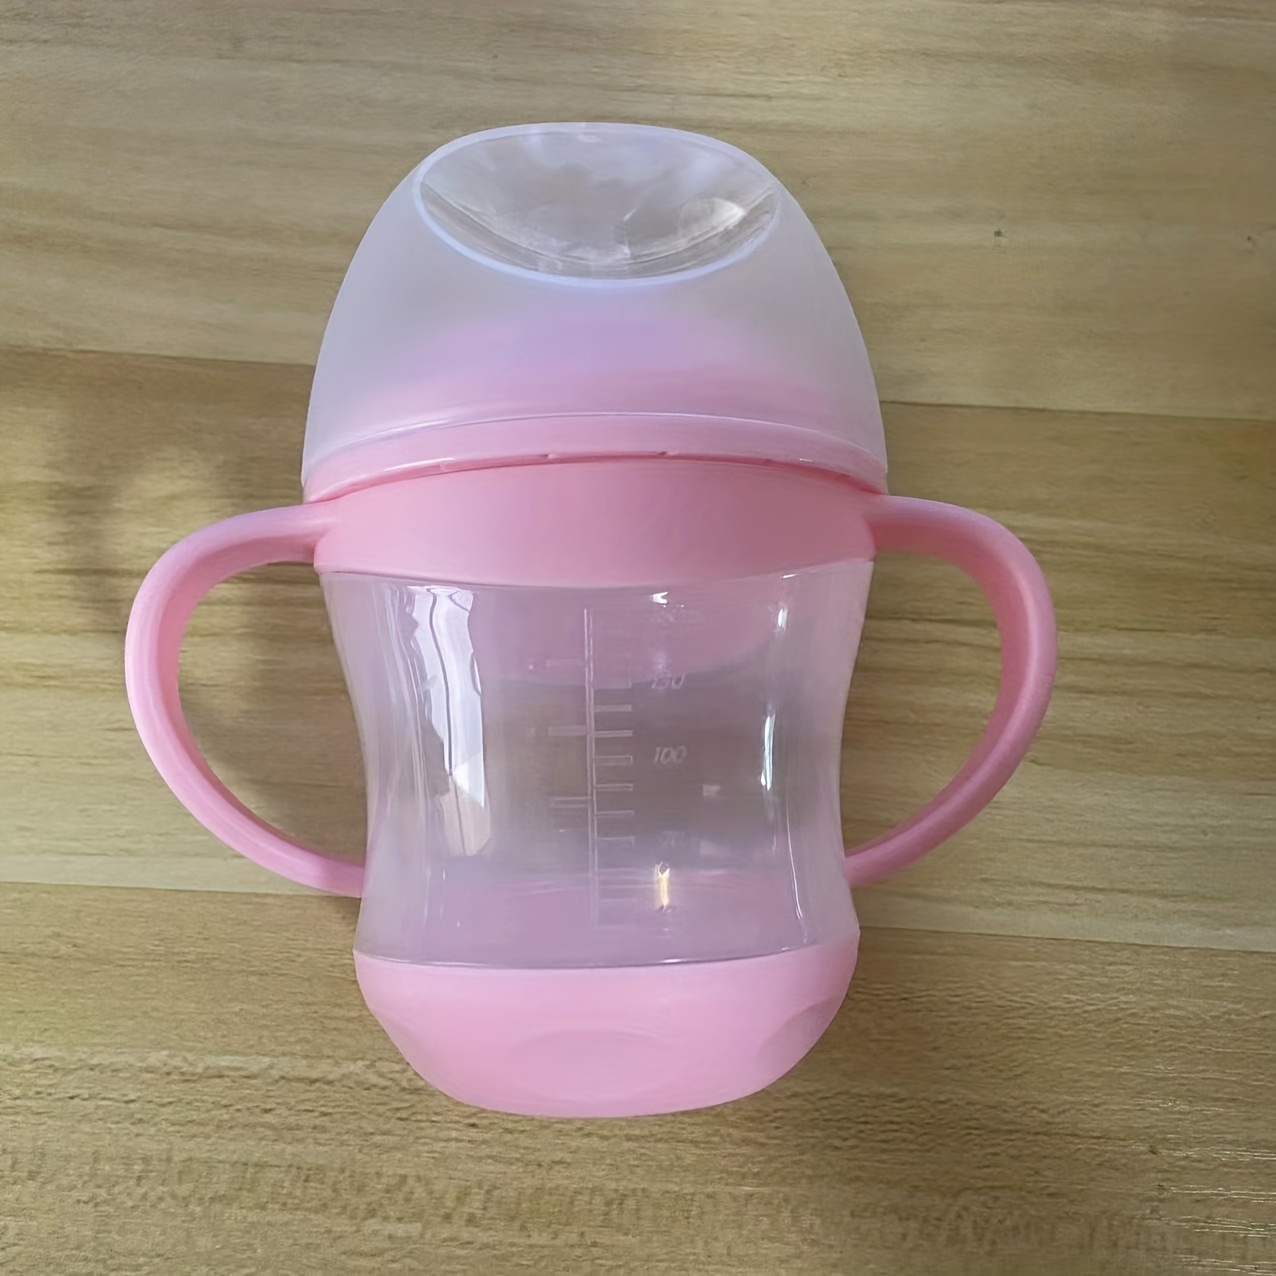 vasos para bebés con forma de boca de pico de pato para alimentar al bebé  archivos